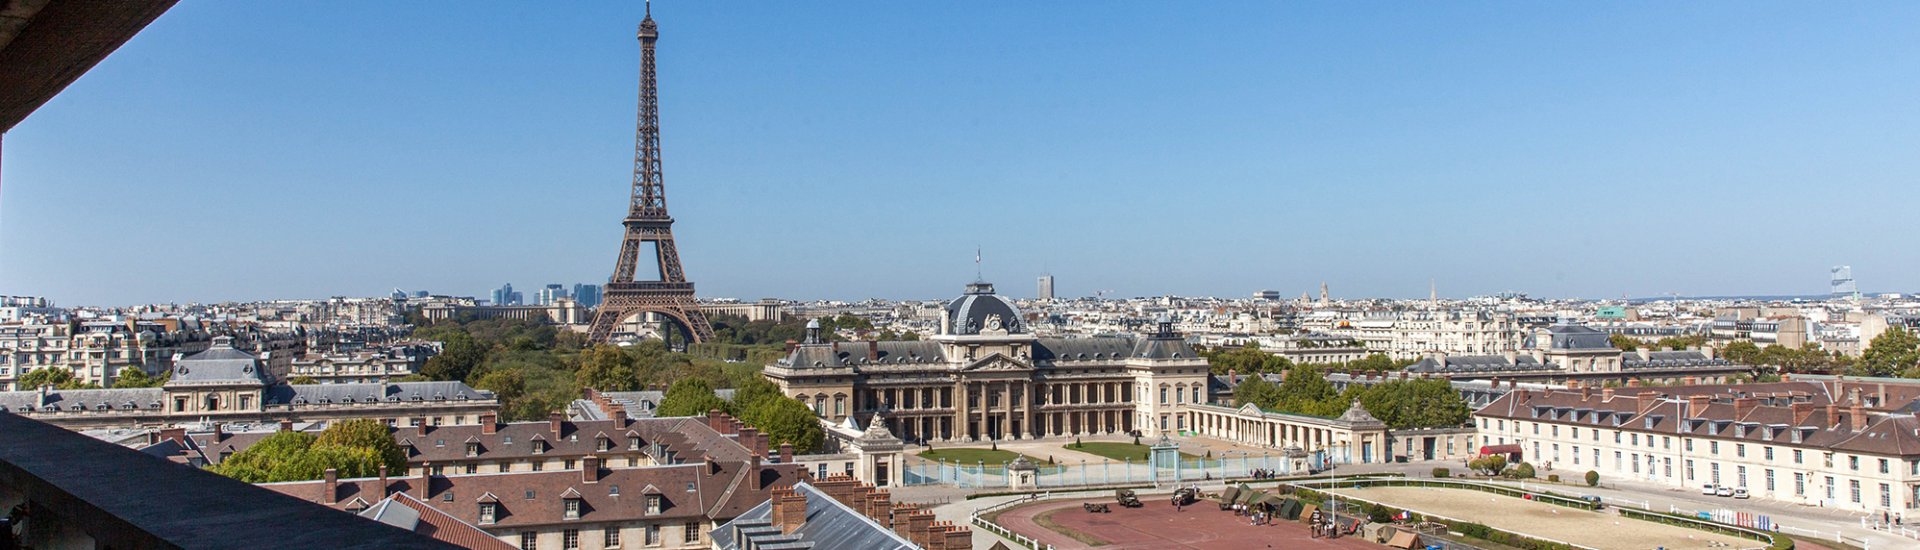 Uitzicht vanuit het Unesco-hoofdkwartier over de stad Parijs. (Foto: Fabrice Gentile | Unesco.org)